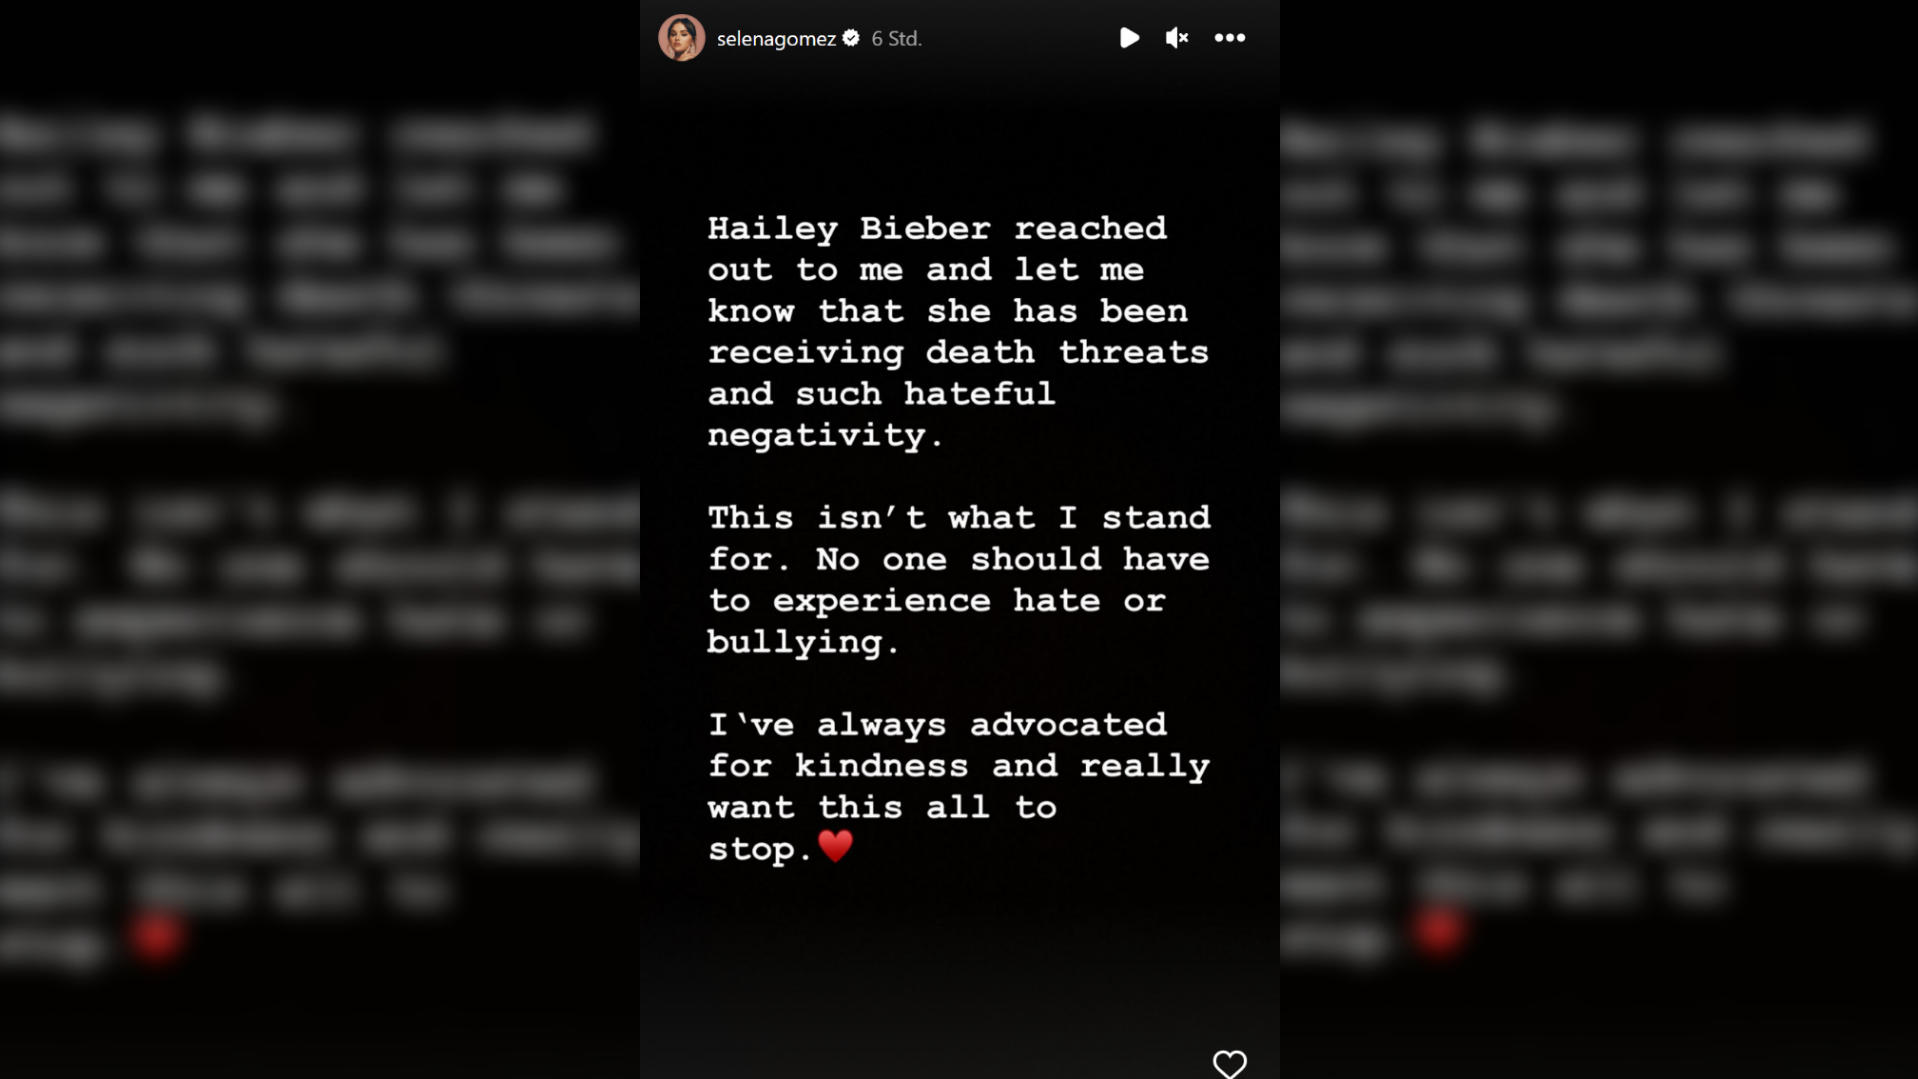 Nach wochenlangen Fan-Diskussionen um einen möglichen Streit zwischen Selena Gomez und Hailey Bieber postet diese jetzt ein öffentliches Statement.